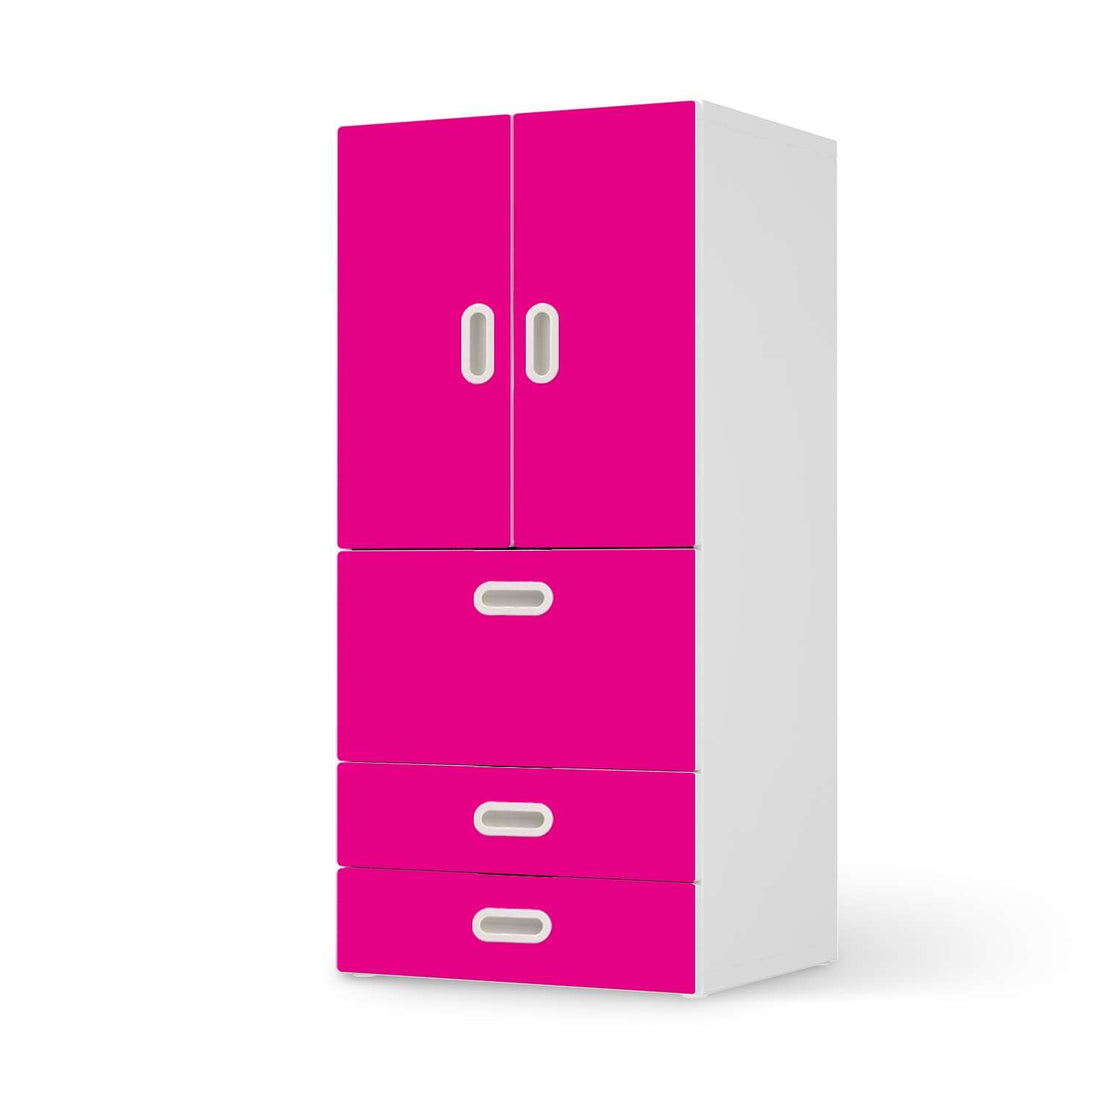 Möbelfolie Pink Dark - IKEA Stuva / Fritids kombiniert - 3 Schubladen und 2 kleine Türen  - weiss